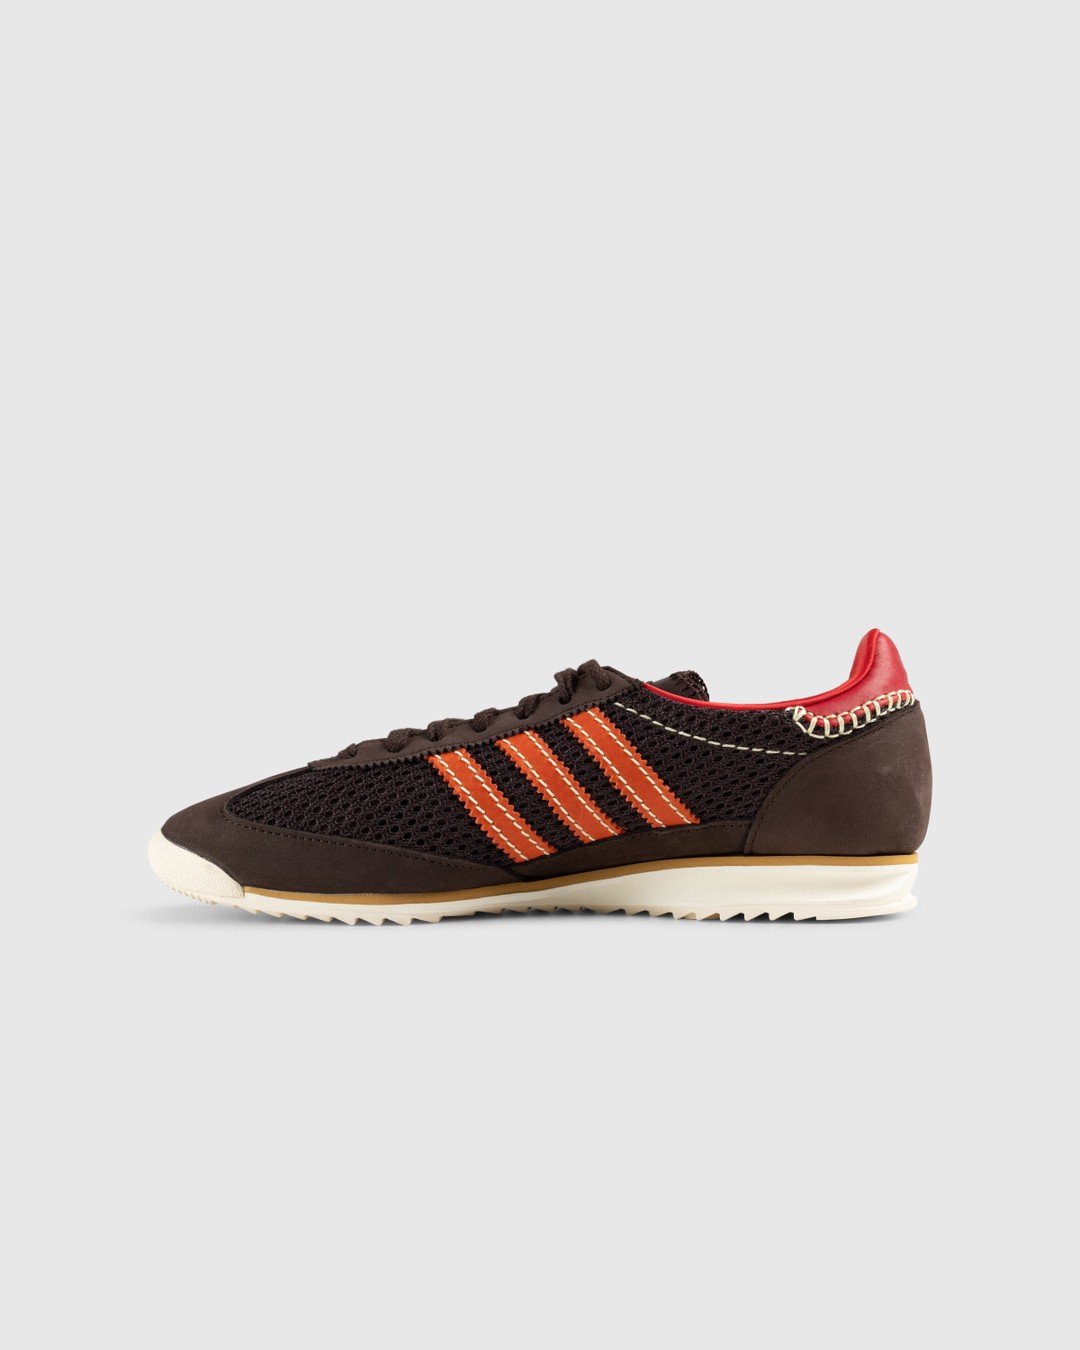 Adidas x Wales Bonner – SL72 Knit Dark Brown - Sneakers - Brown - Image 2